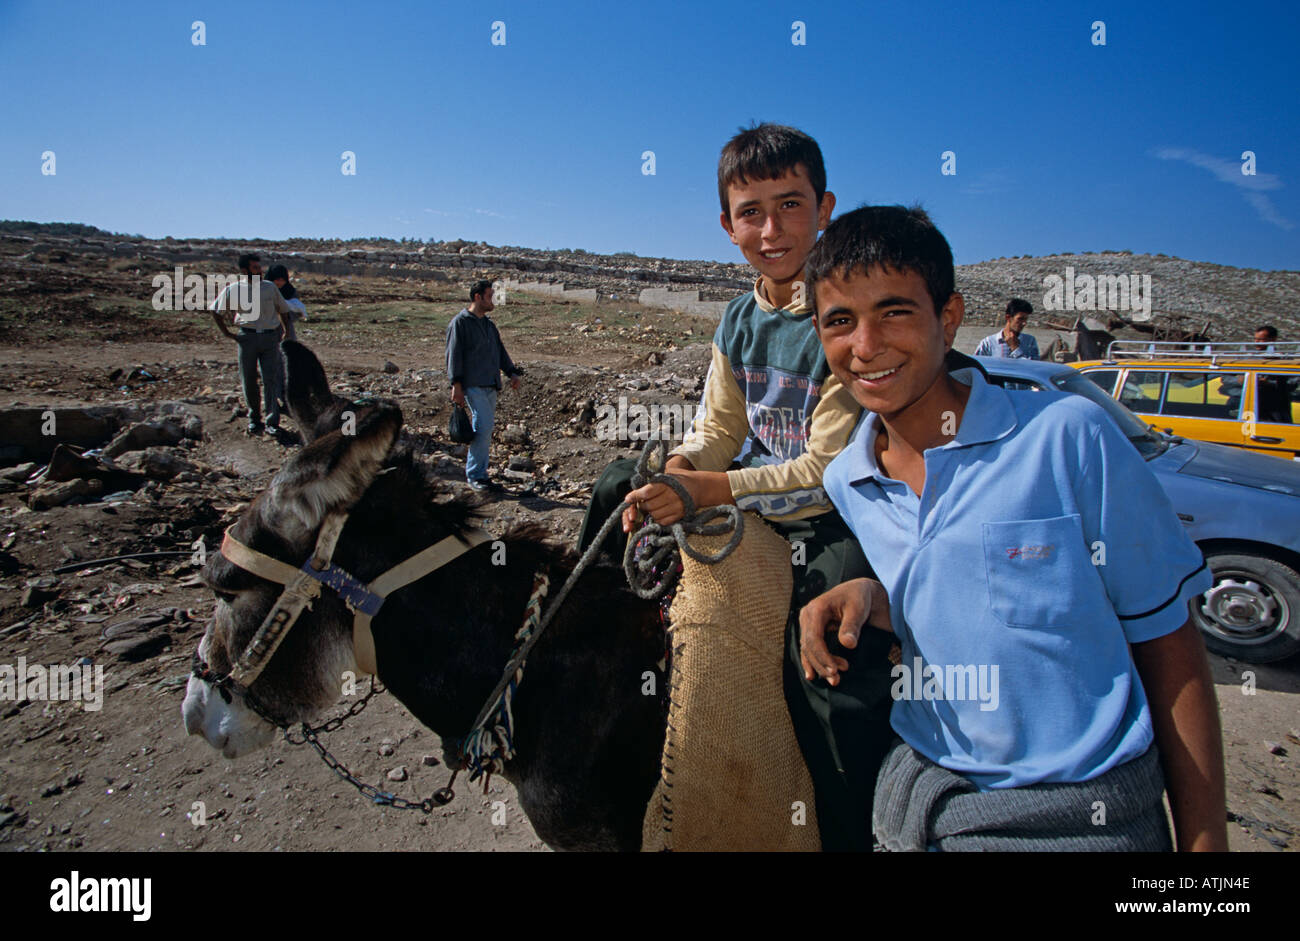 Teenage boys and donkey on destroyed road, Tulkarm, West Bank Stock Photo